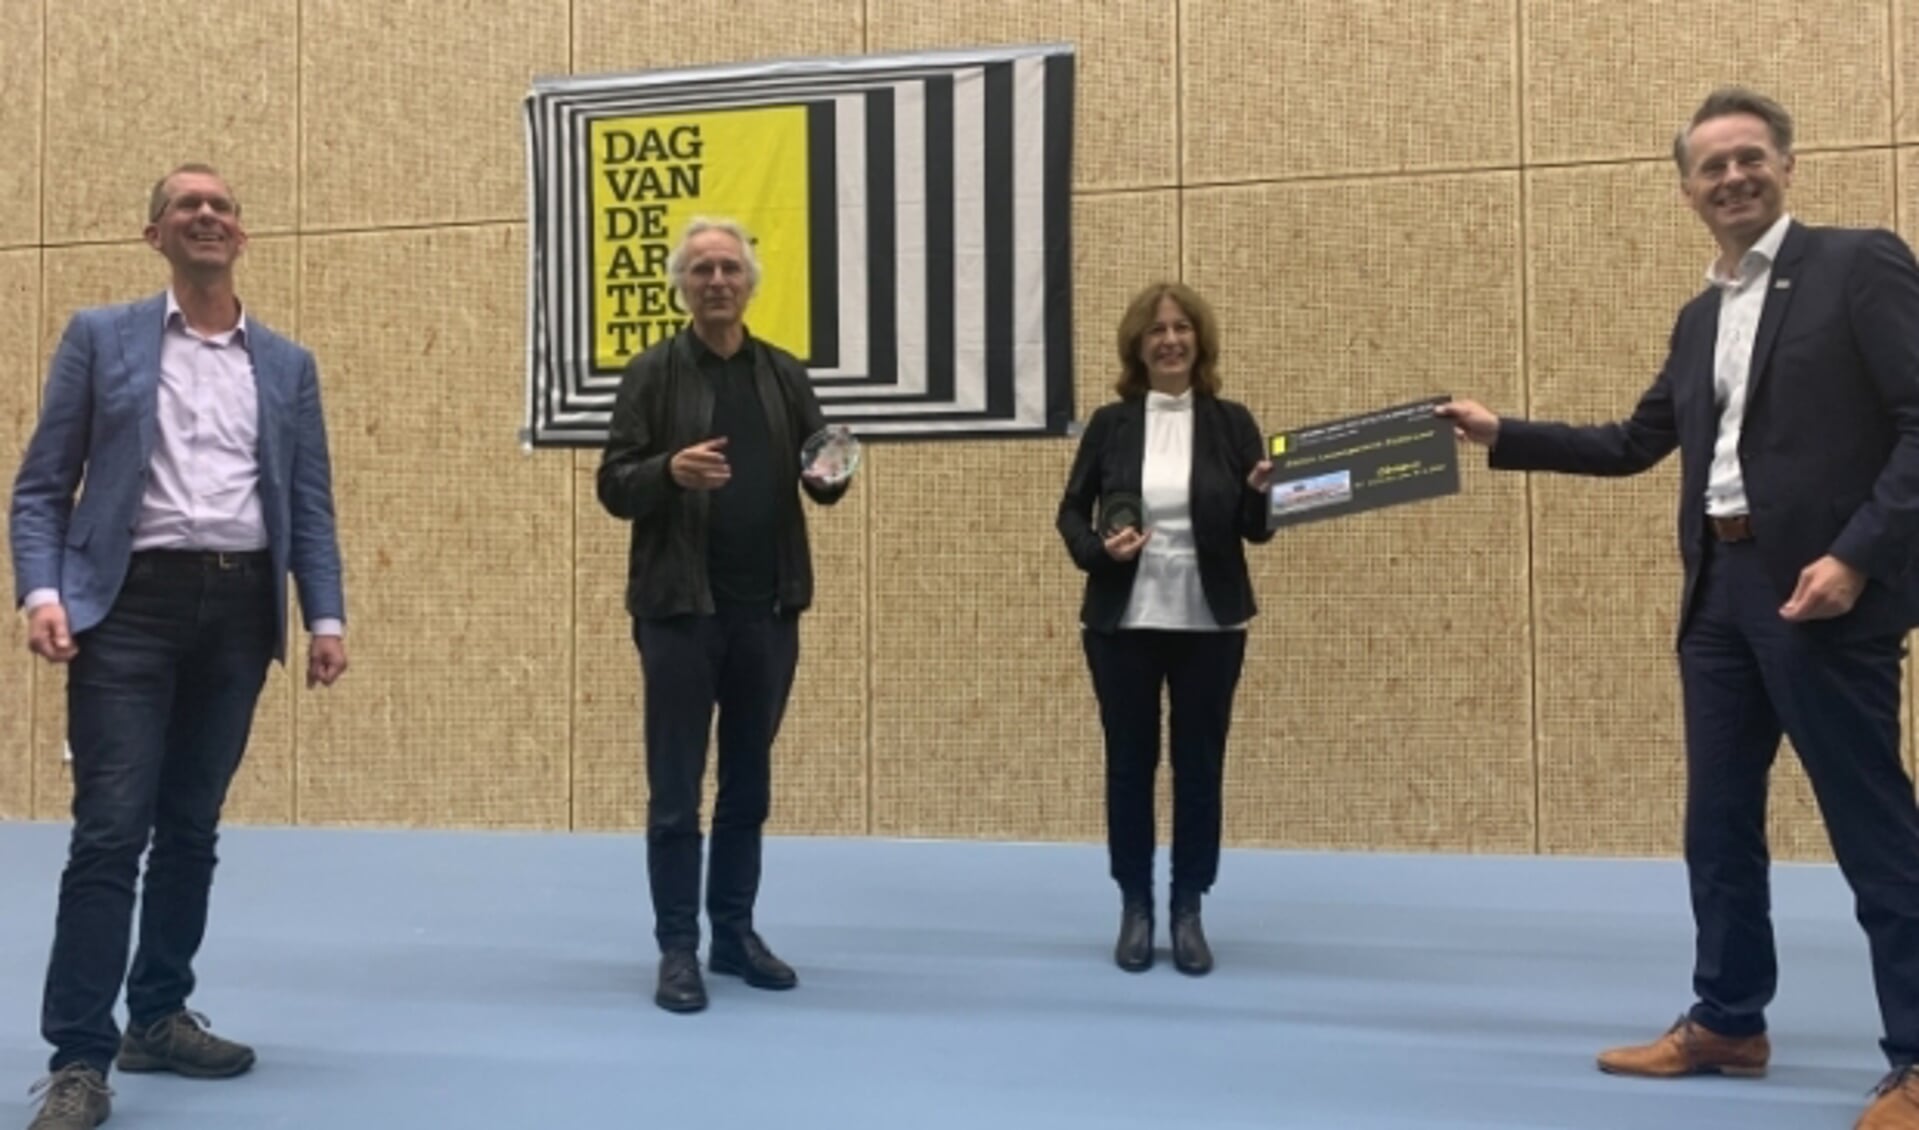 Winnaars Jeroen van Schooten van Team V architectuur en Beate Vlaanderen van Arcadis nemen prijs in ontvangst van wethouder Robin Paalvast.